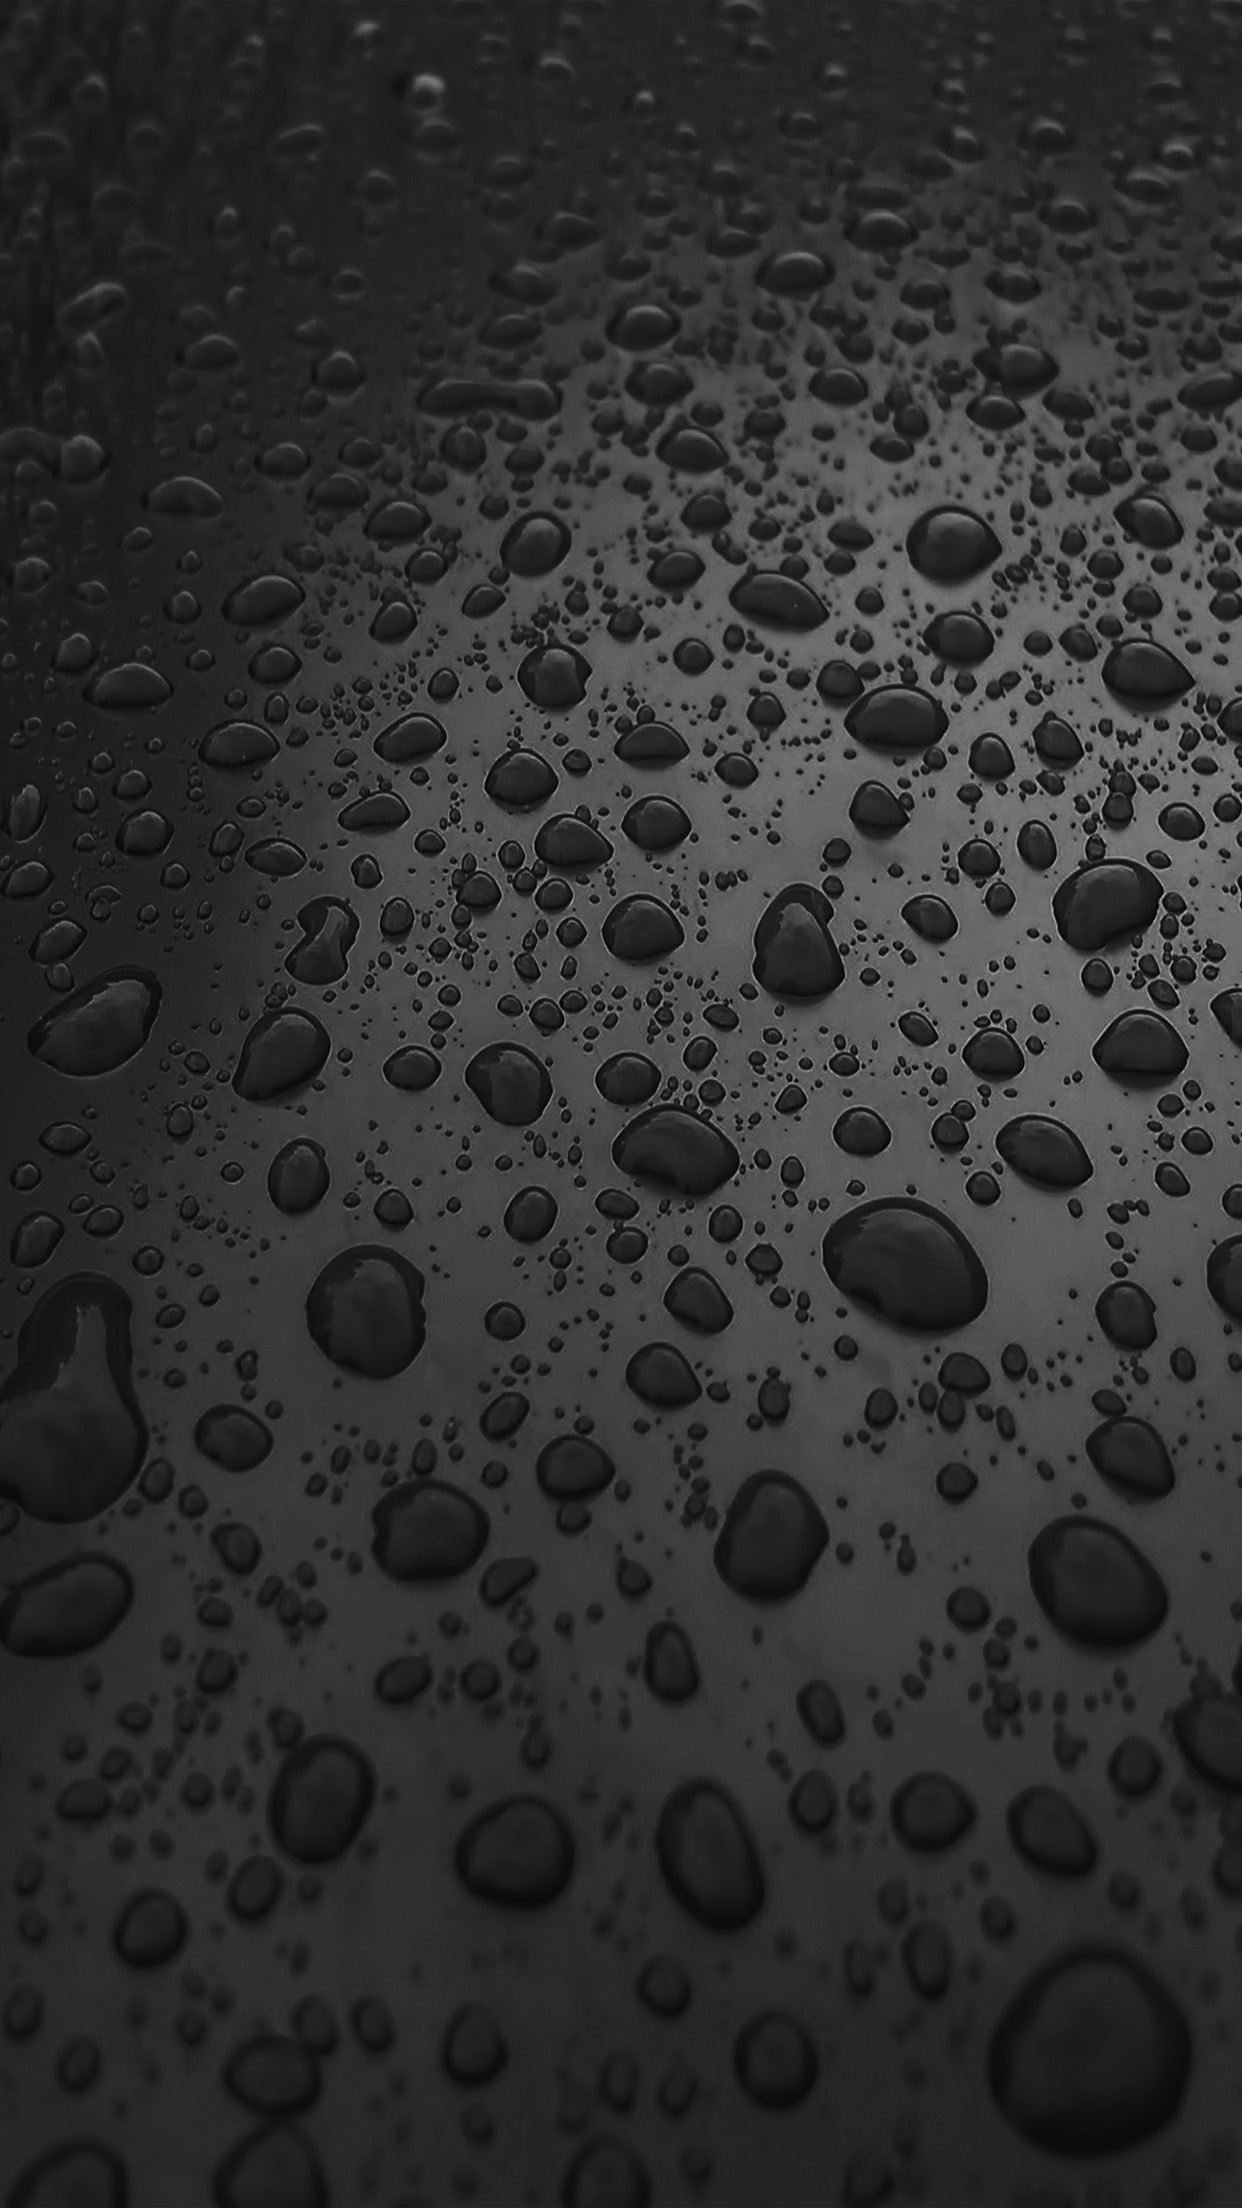 iPhone X wallpaper. rain drop nature dark bw sad pattern